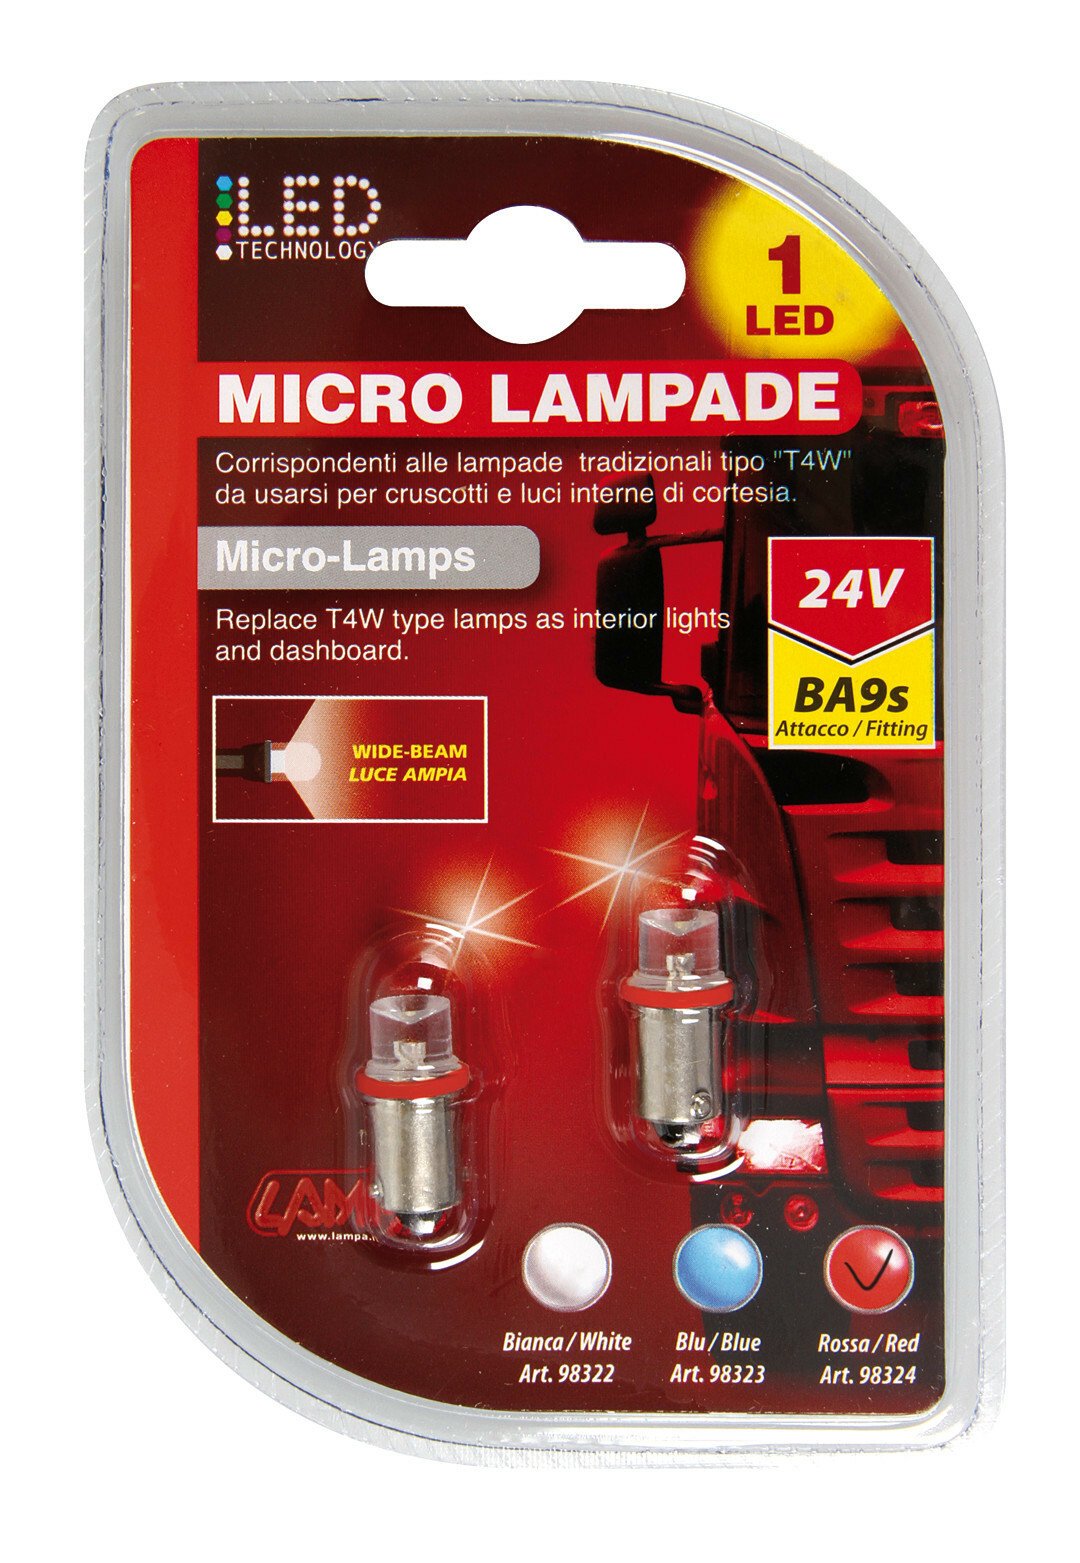 24V Micro lamp 1 Led - (T4W) - BA9s - 2 pcs - D/Blister - Red - Cridem